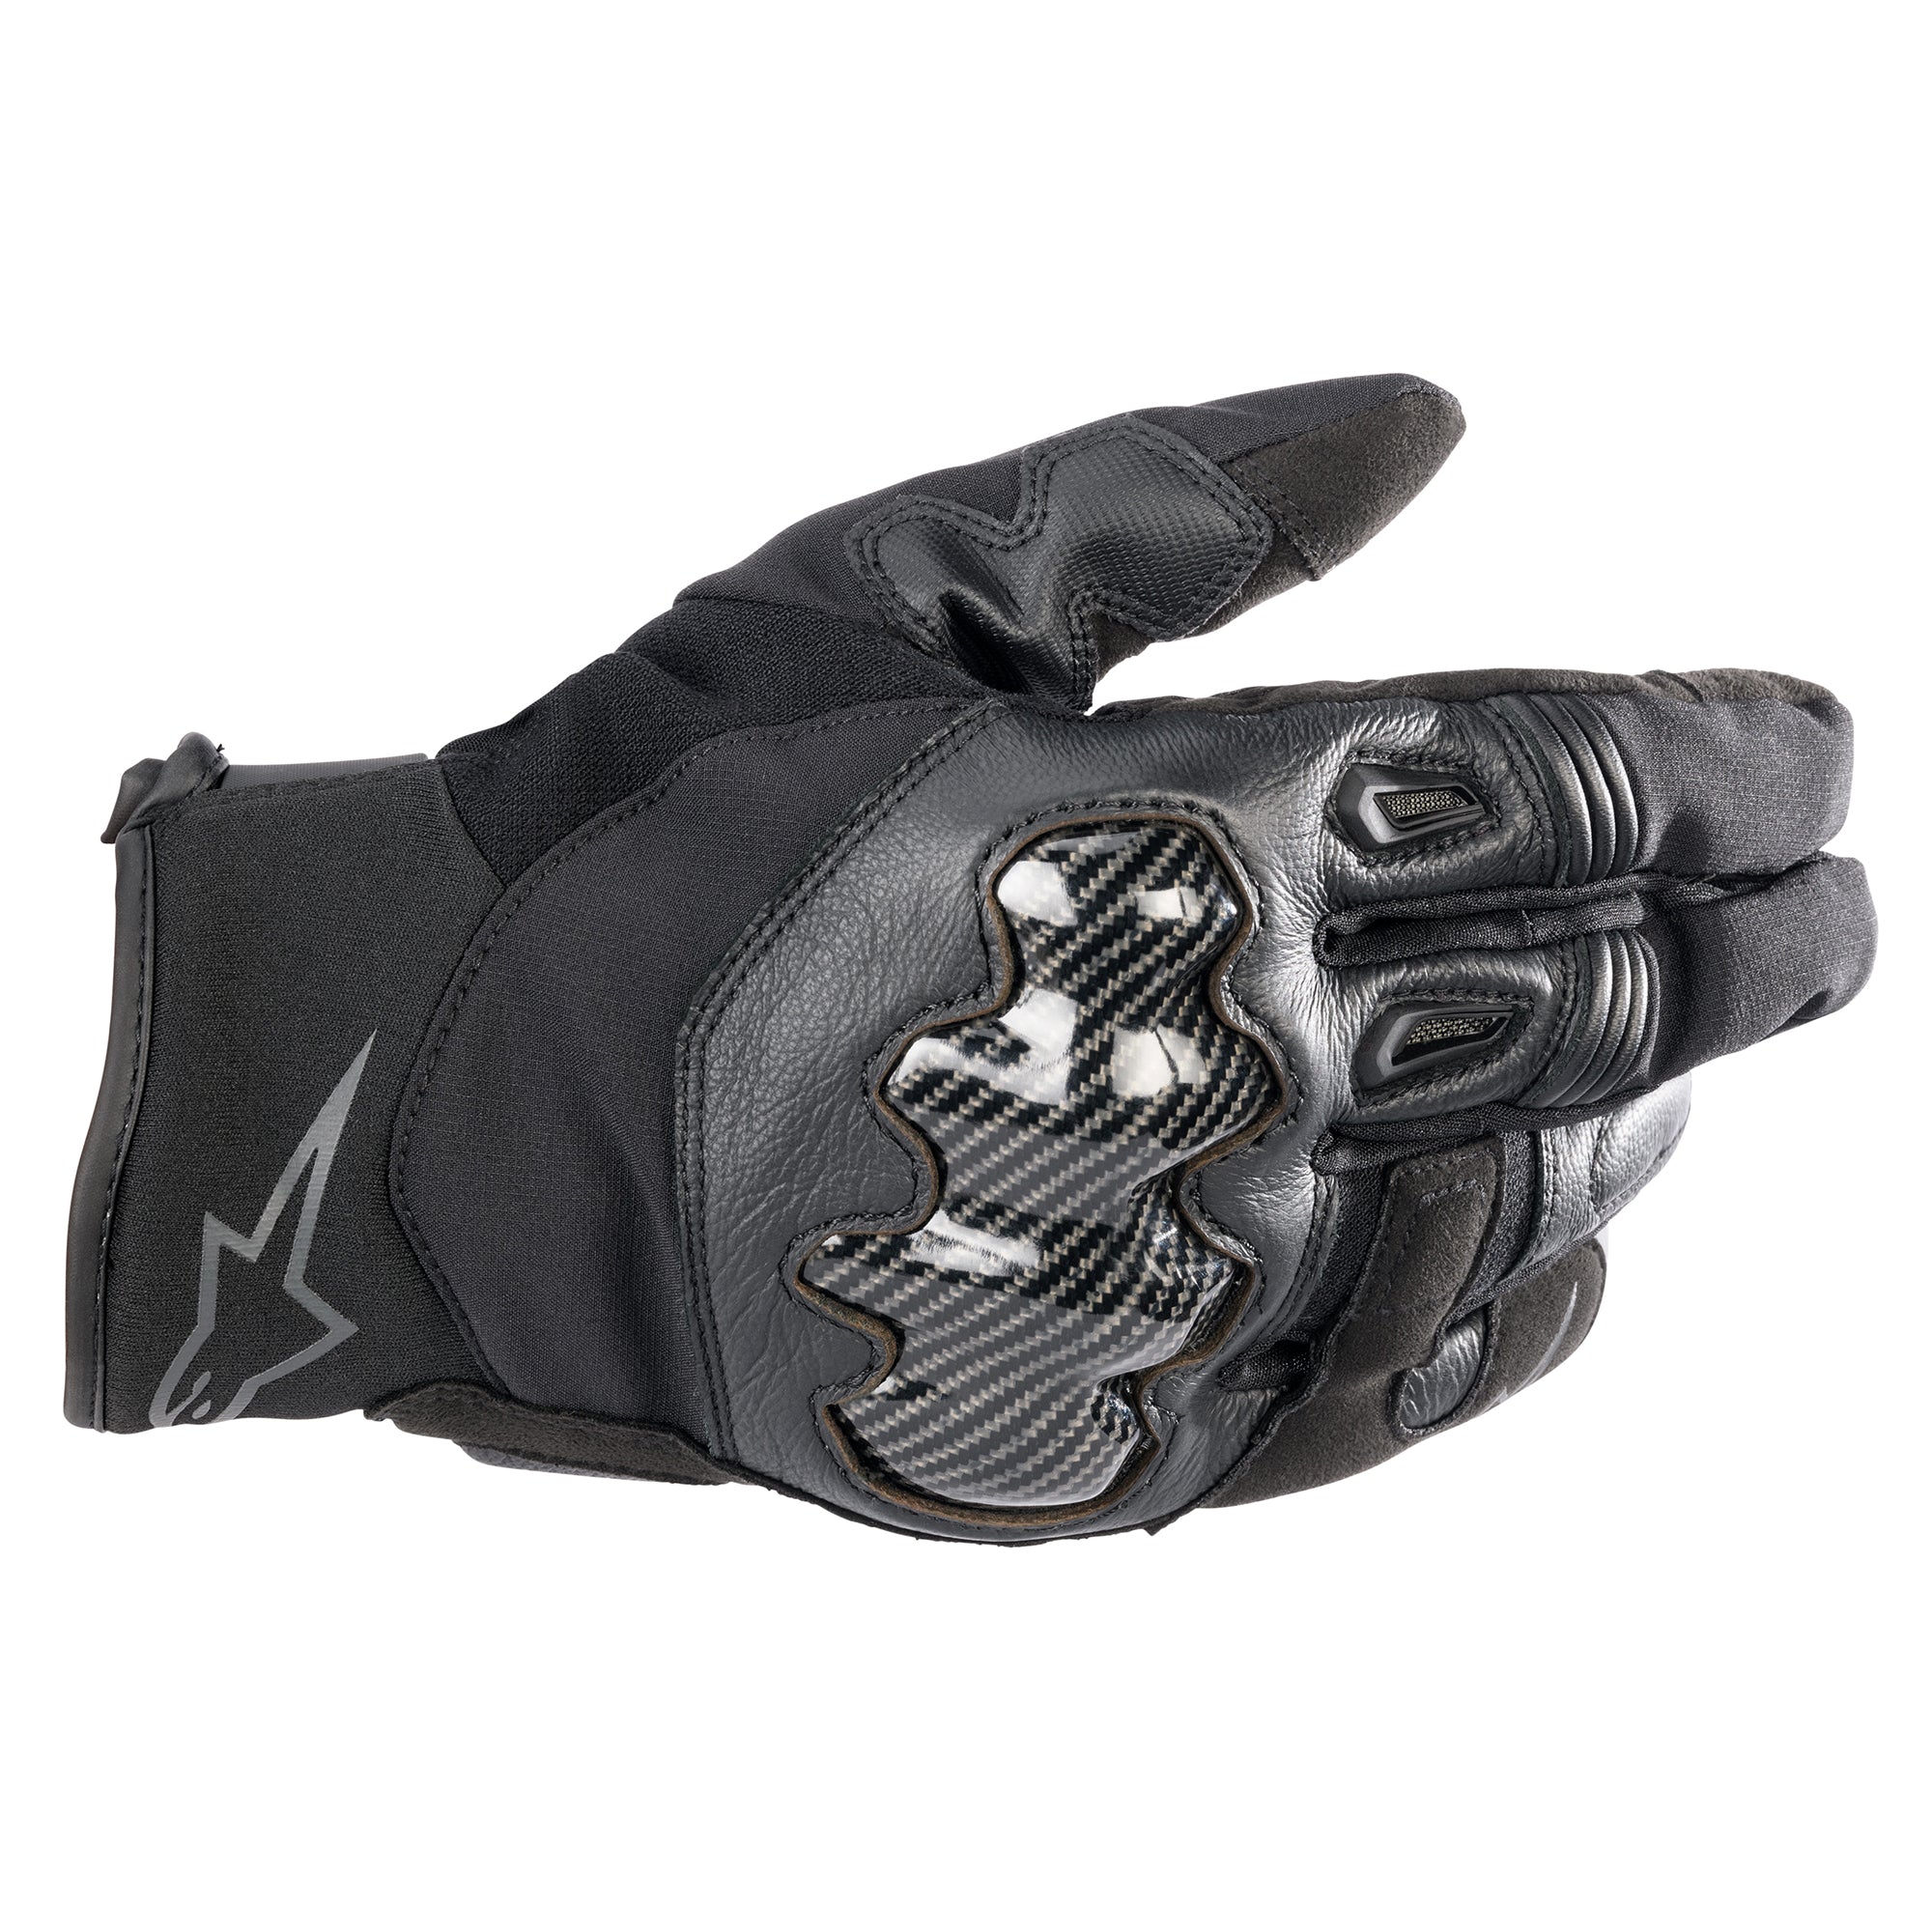 Alpinestars - Smx-1 Drystar Gloves